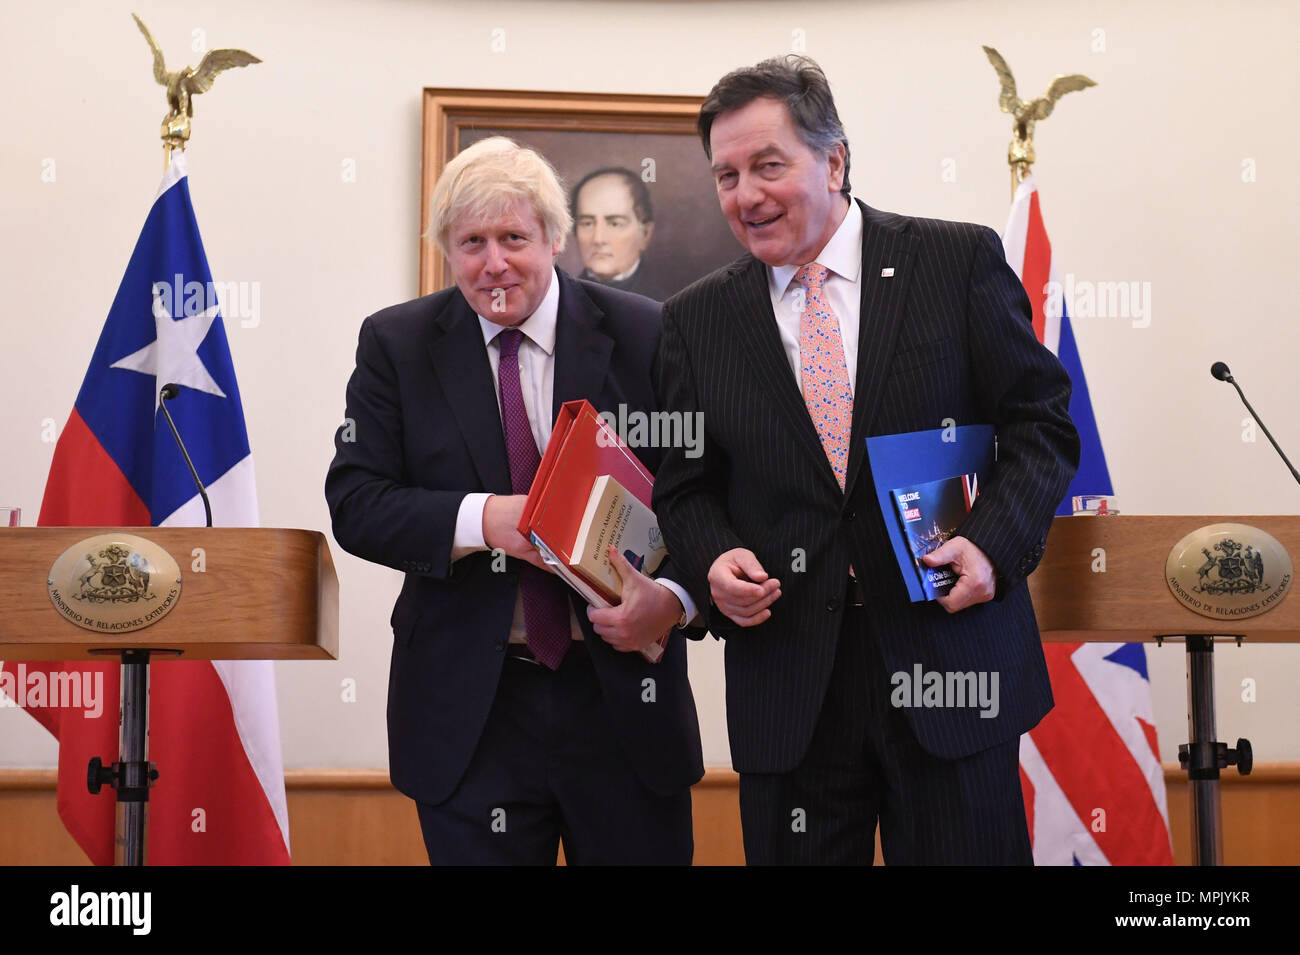 Segretario di Stato per gli affari esteri Boris Johnson dopo aver tenuto una conferenza stampa con il ministro degli Esteri cileno Roberto Ampuero presso il Ministero degli Affari esteri a Santiago del Cile. Foto Stock